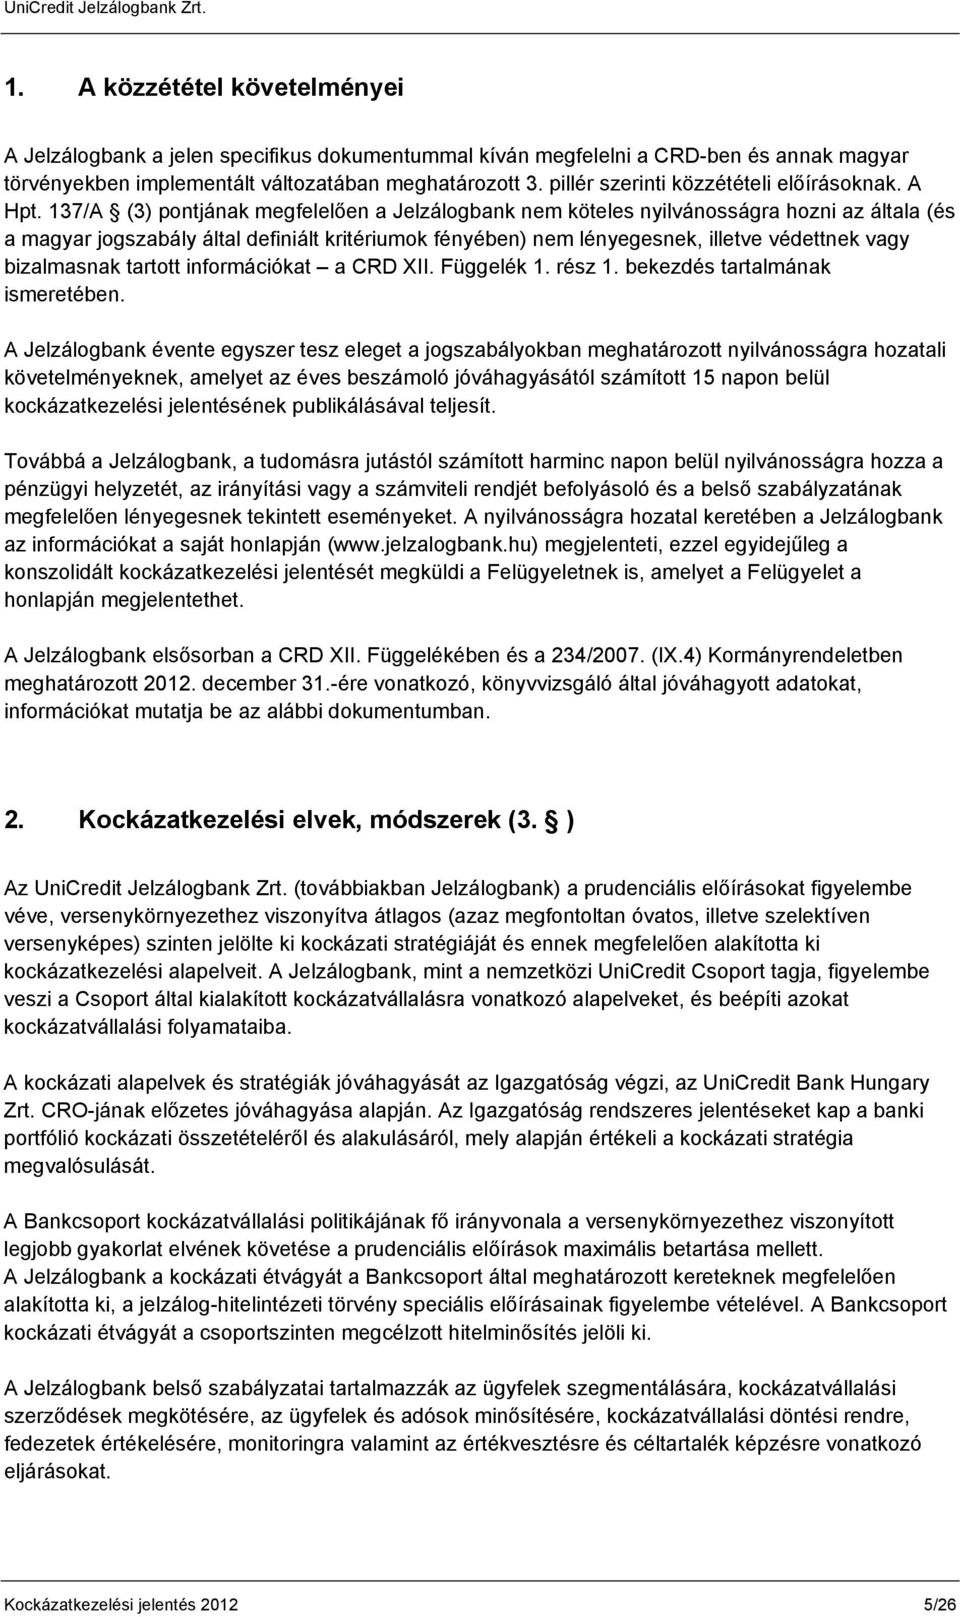 137/A (3) pontjának megfelelően a Jelzálogbank nem köteles nyilvánosságra hozni az általa (és a magyar jogszabály által definiált kritériumok fényében) nem lényegesnek, illetve védettnek vagy